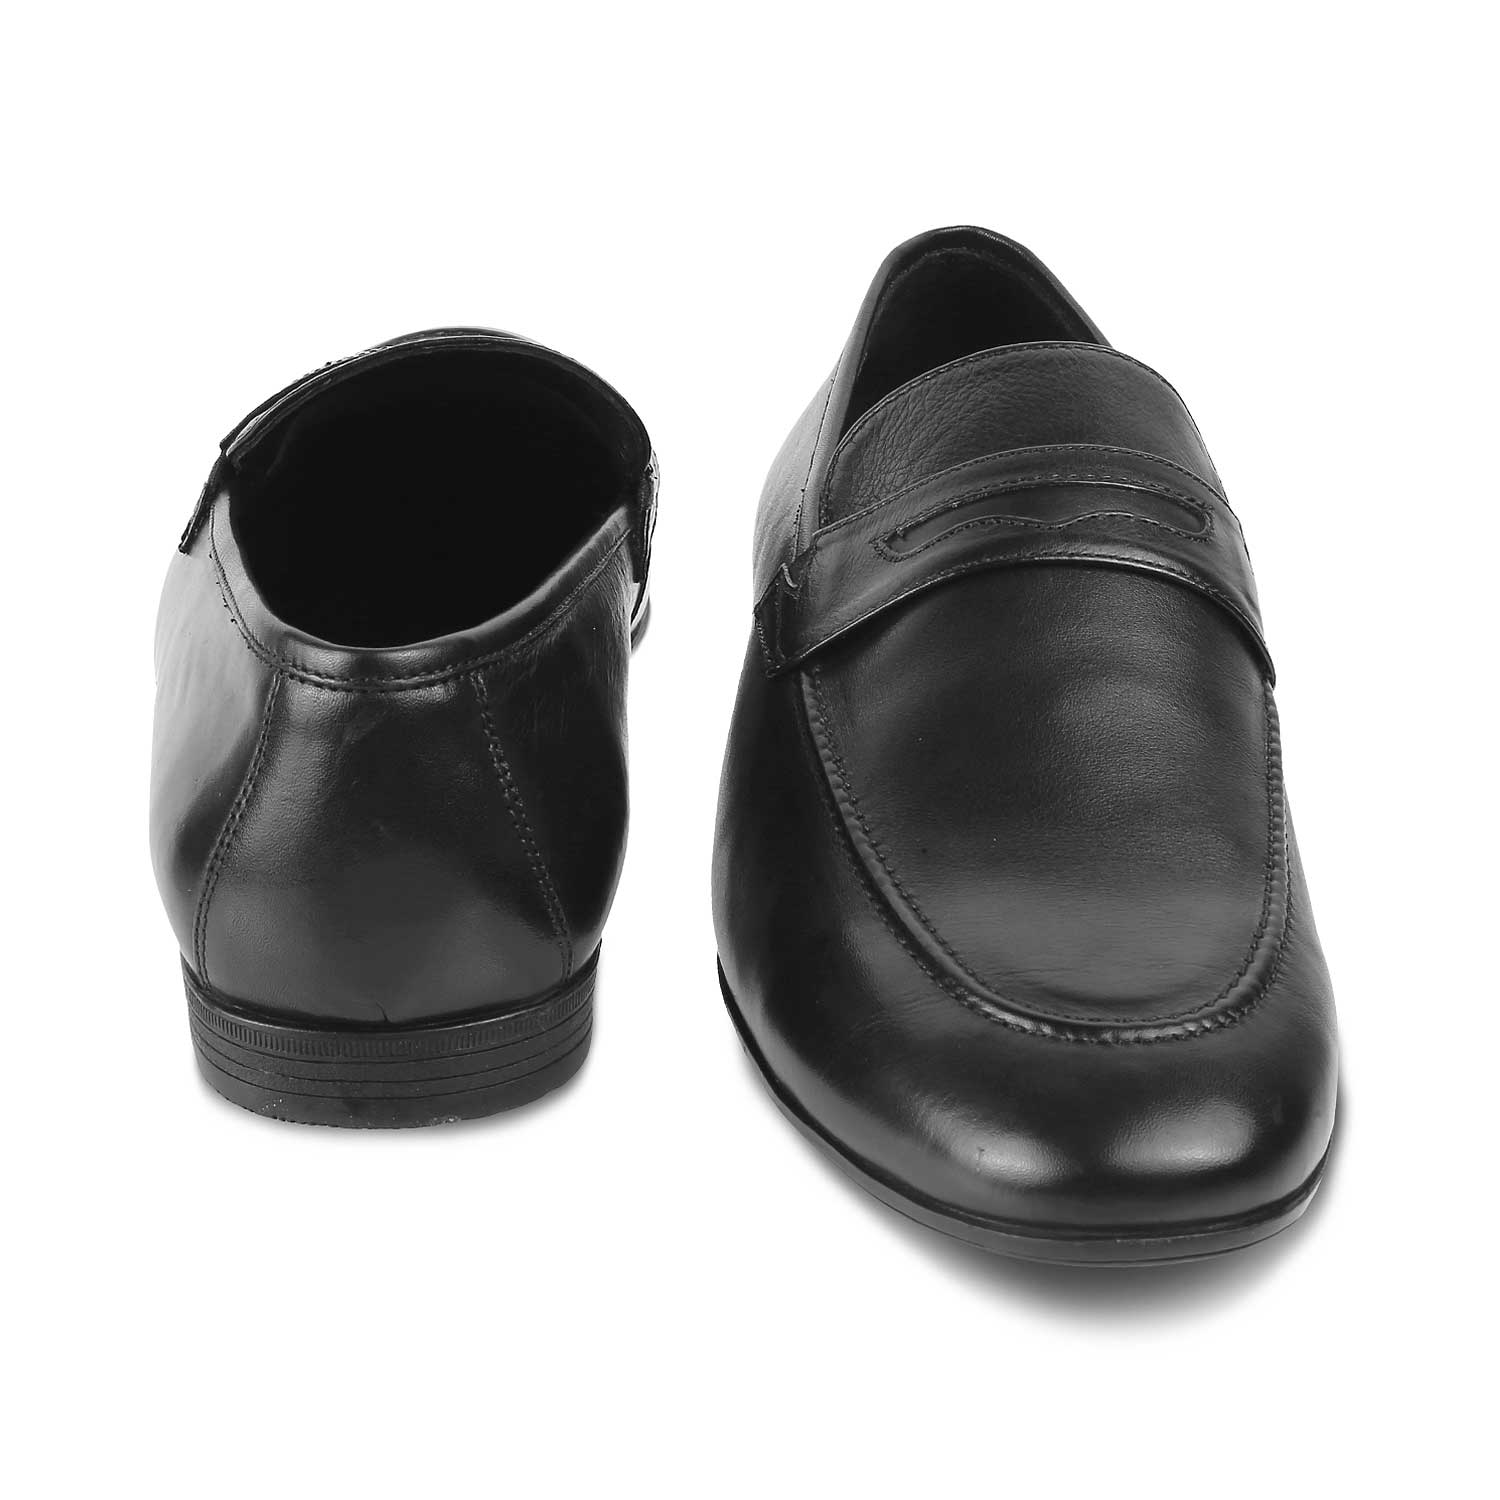 Penloaf Black Men's Leather Loafers Online at Tresmode.com